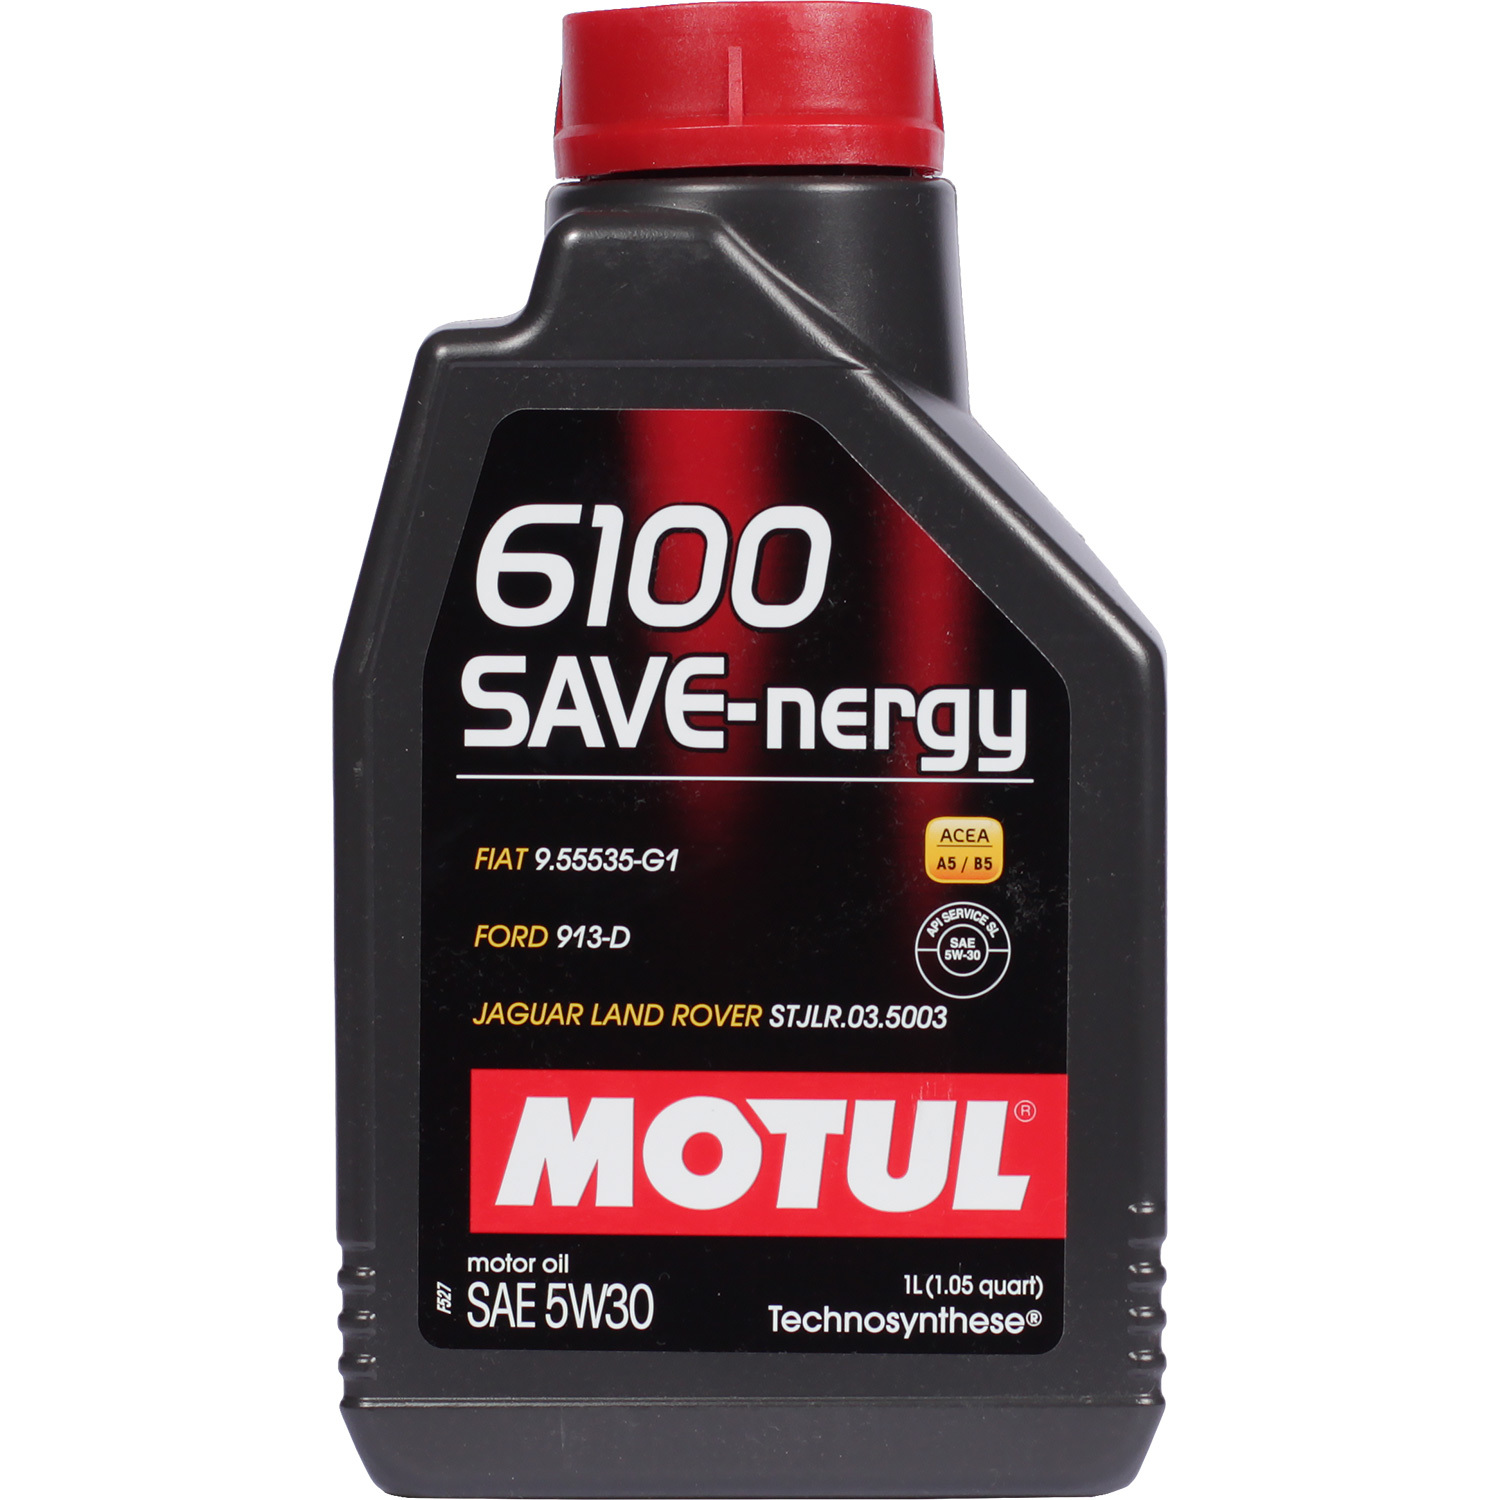 Motul Моторное масло Motul 6100 SAVE-NERGY 5W-30, 1 л motul моторное масло motul 8100 eco nergy 5w 30 1 л